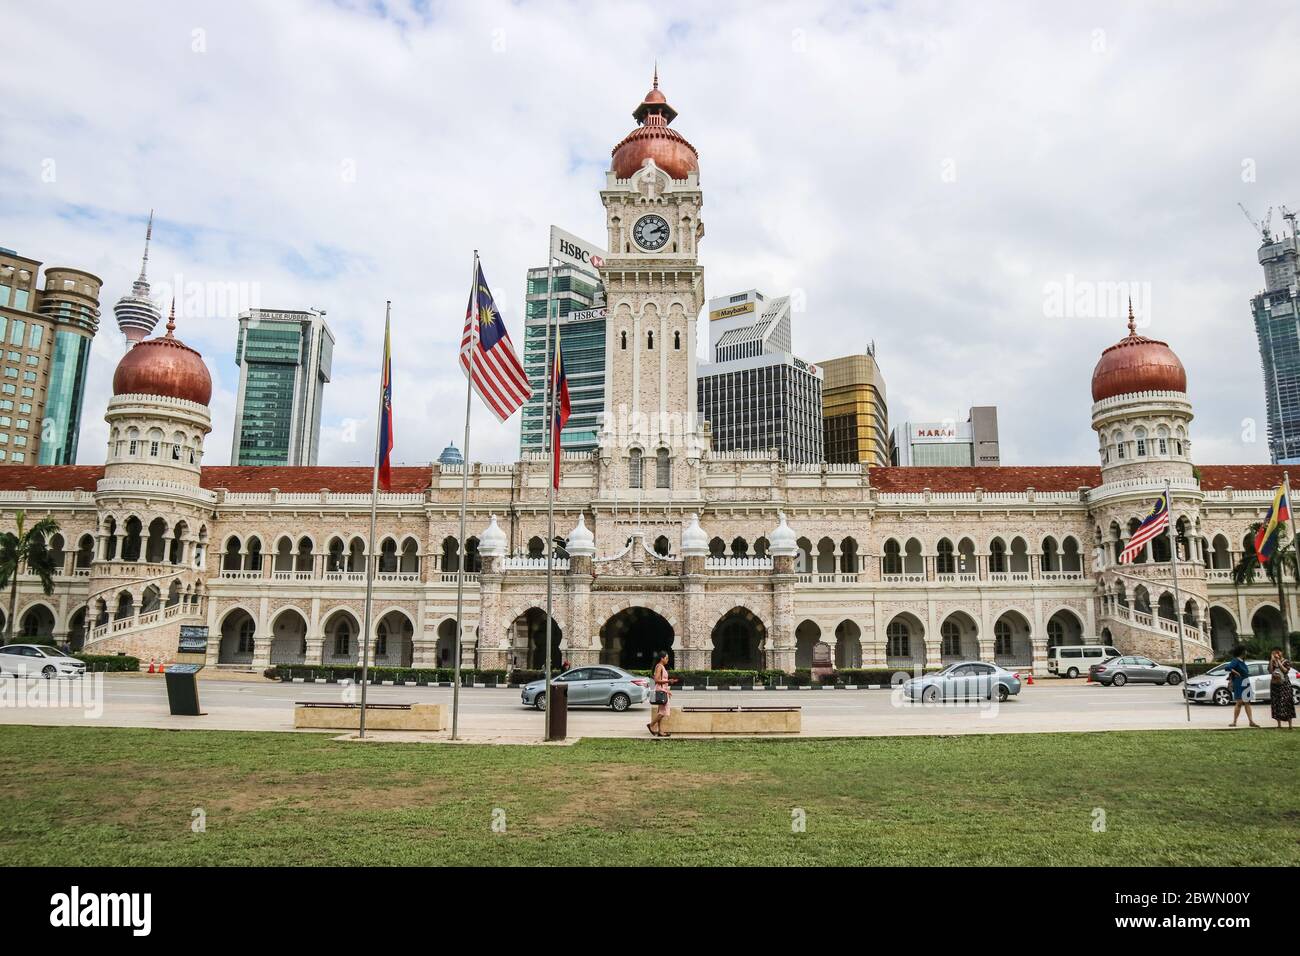 KUALA LUMPUR, MALAISIE - 28 NOVEMBRE 2019 : le bâtiment Sultan Abdul Samad est situé en face de la place Merdeka à Jalan Raja, Kuala Lumpur Malay Banque D'Images